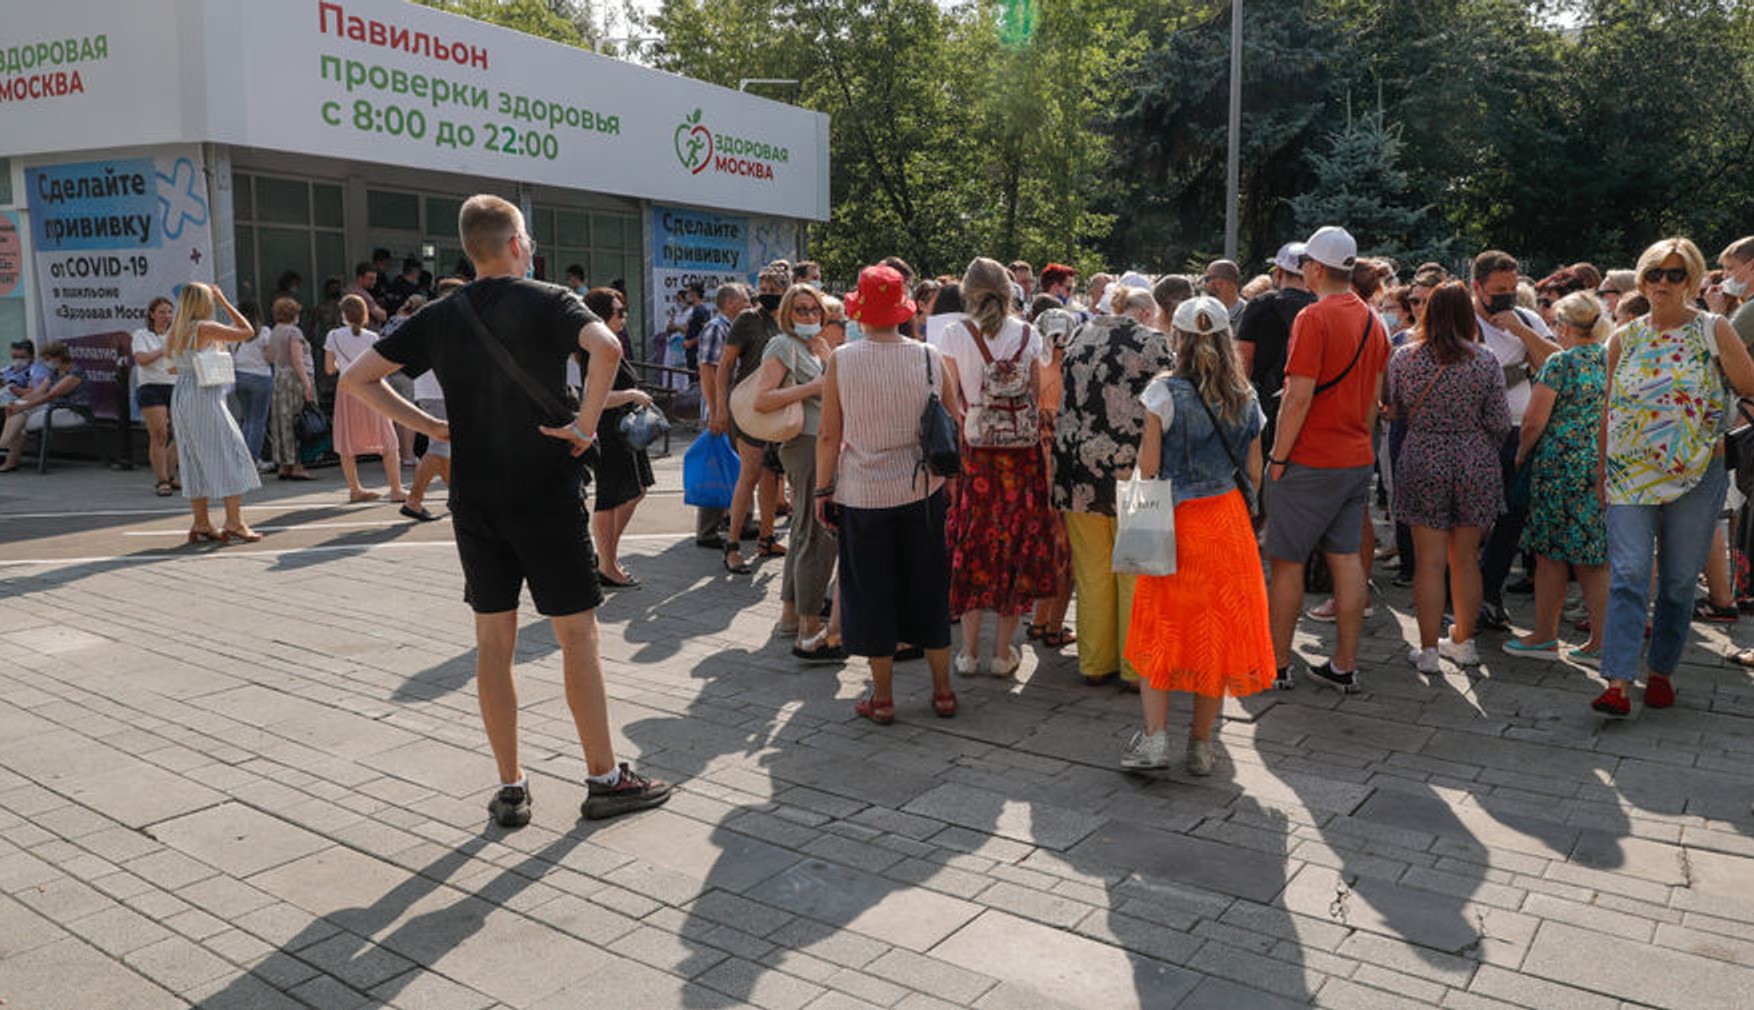 «КовіВак» закінчився в ряді пунктів вакцинації в Москві через кілька годин після появи у вільному доступі